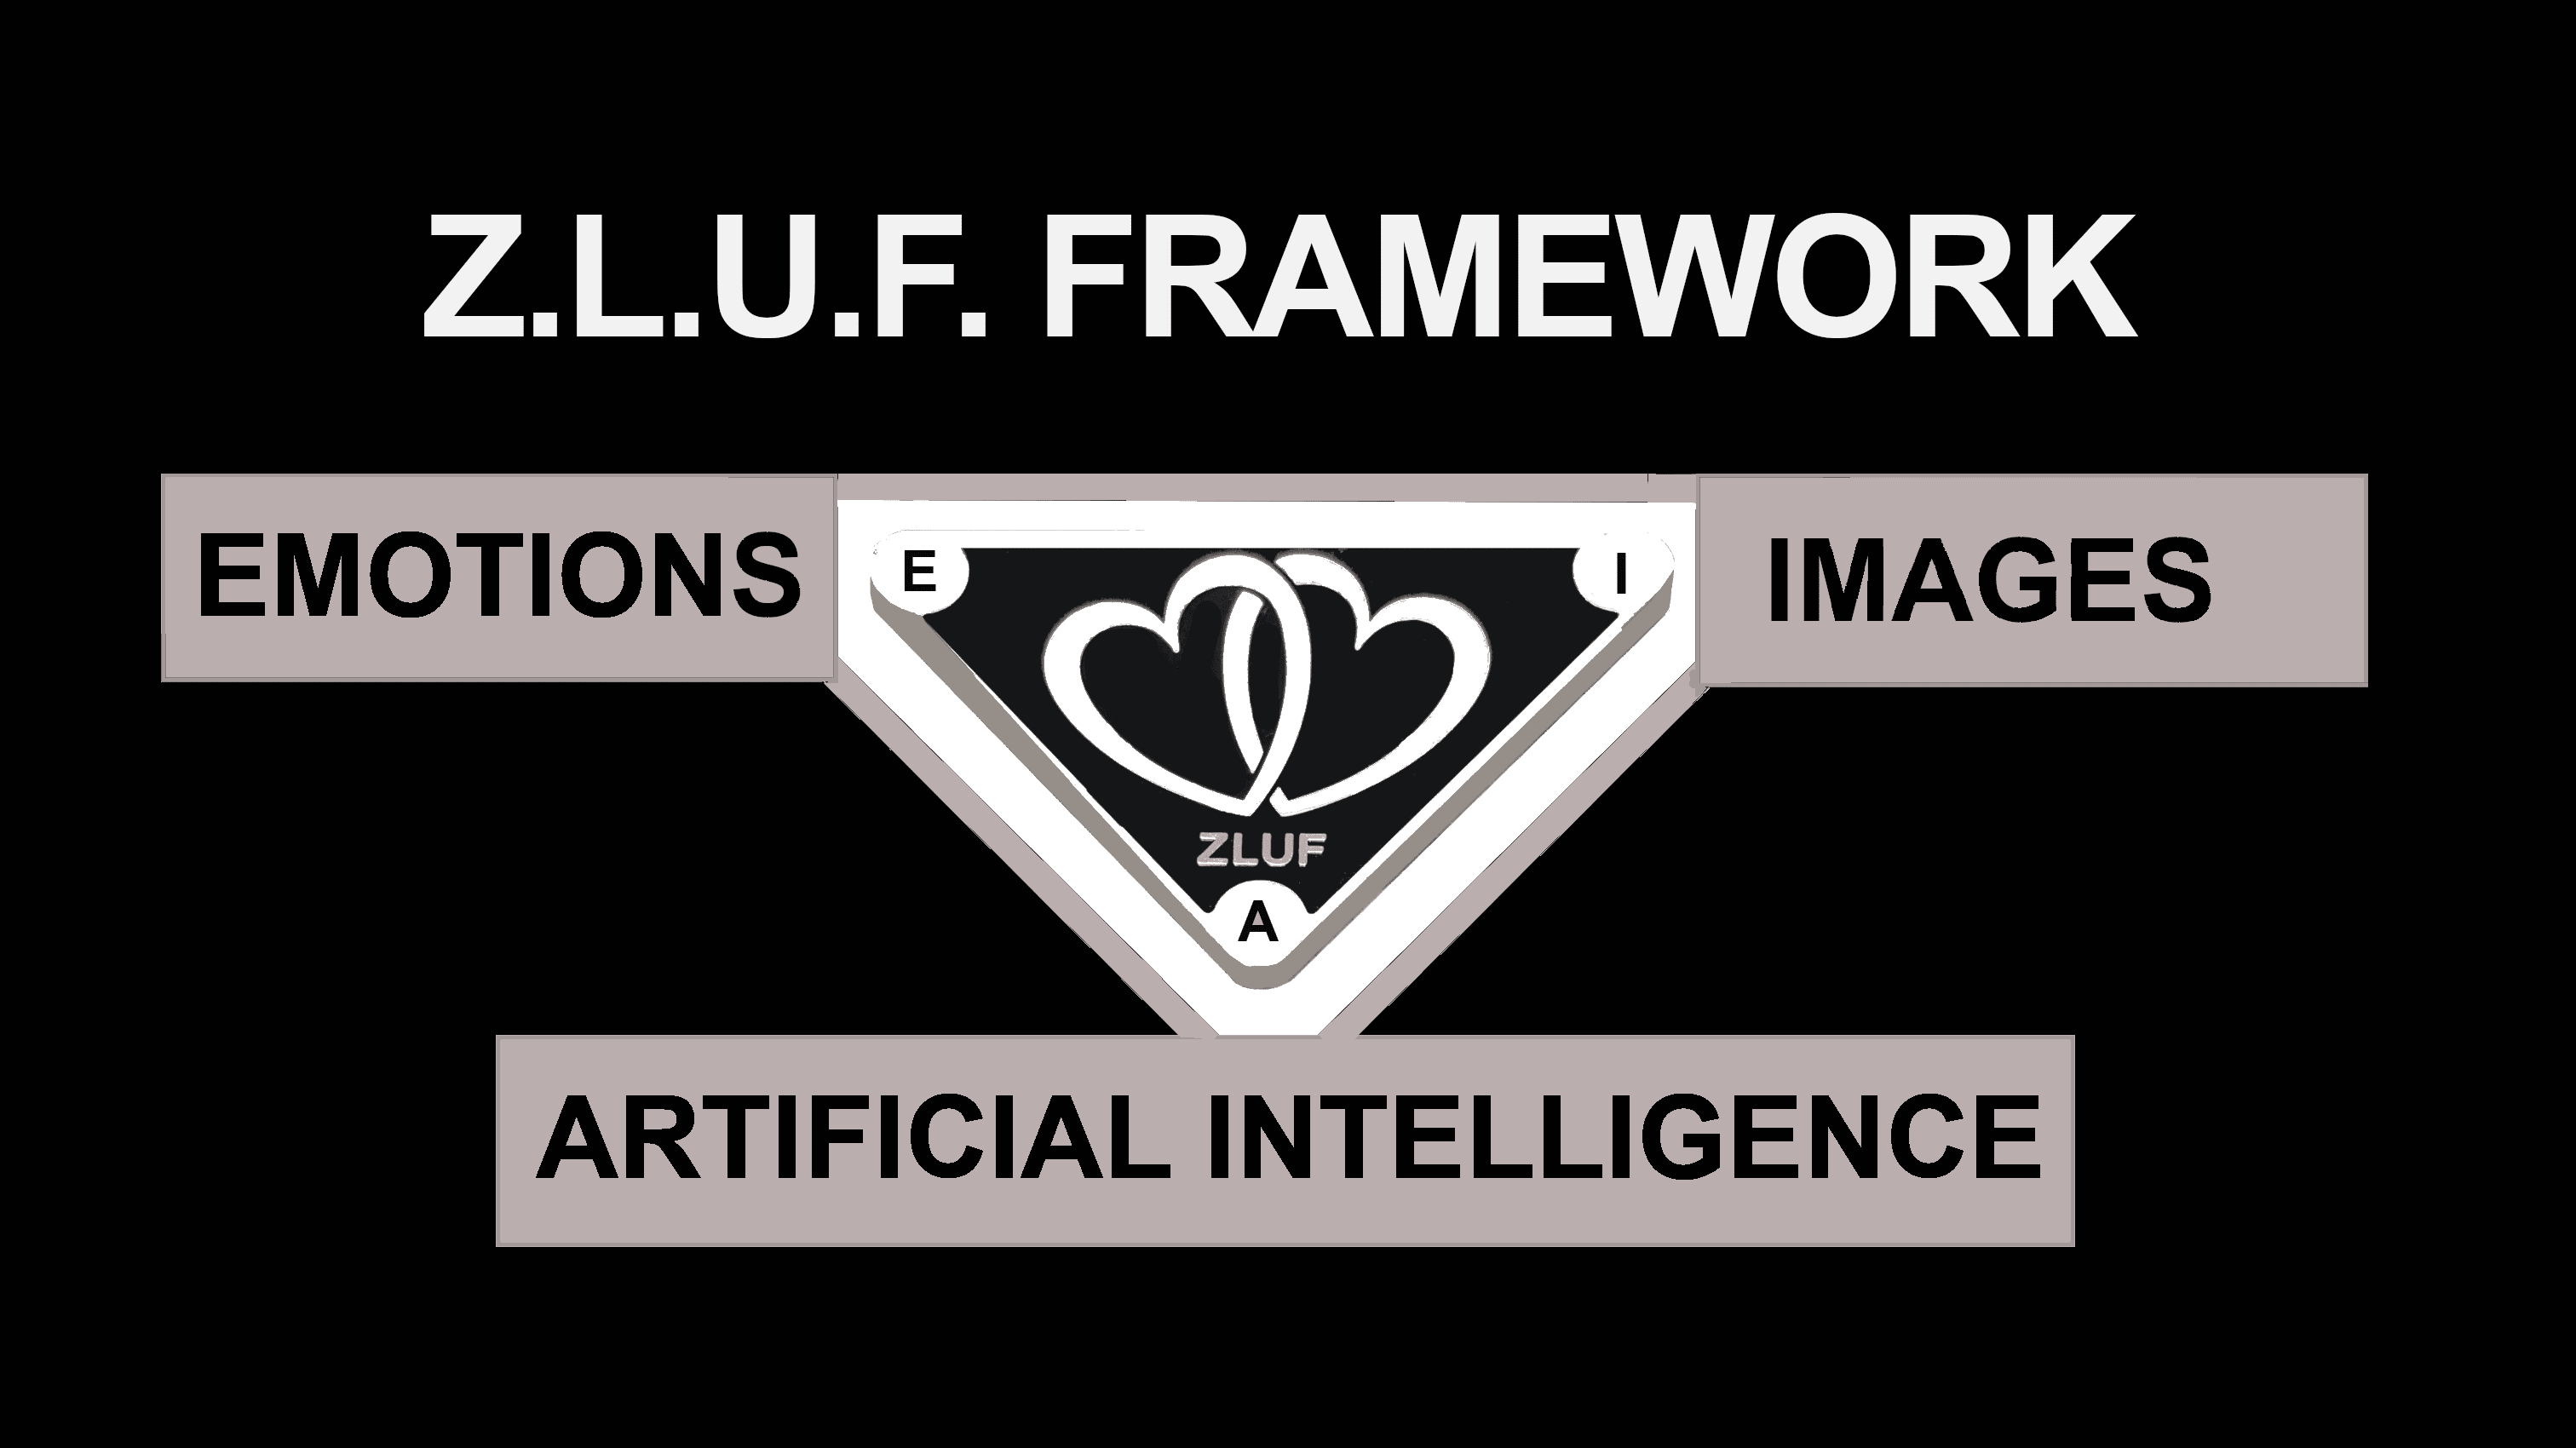 Z.L.U.F. FRAMEWORK Technology